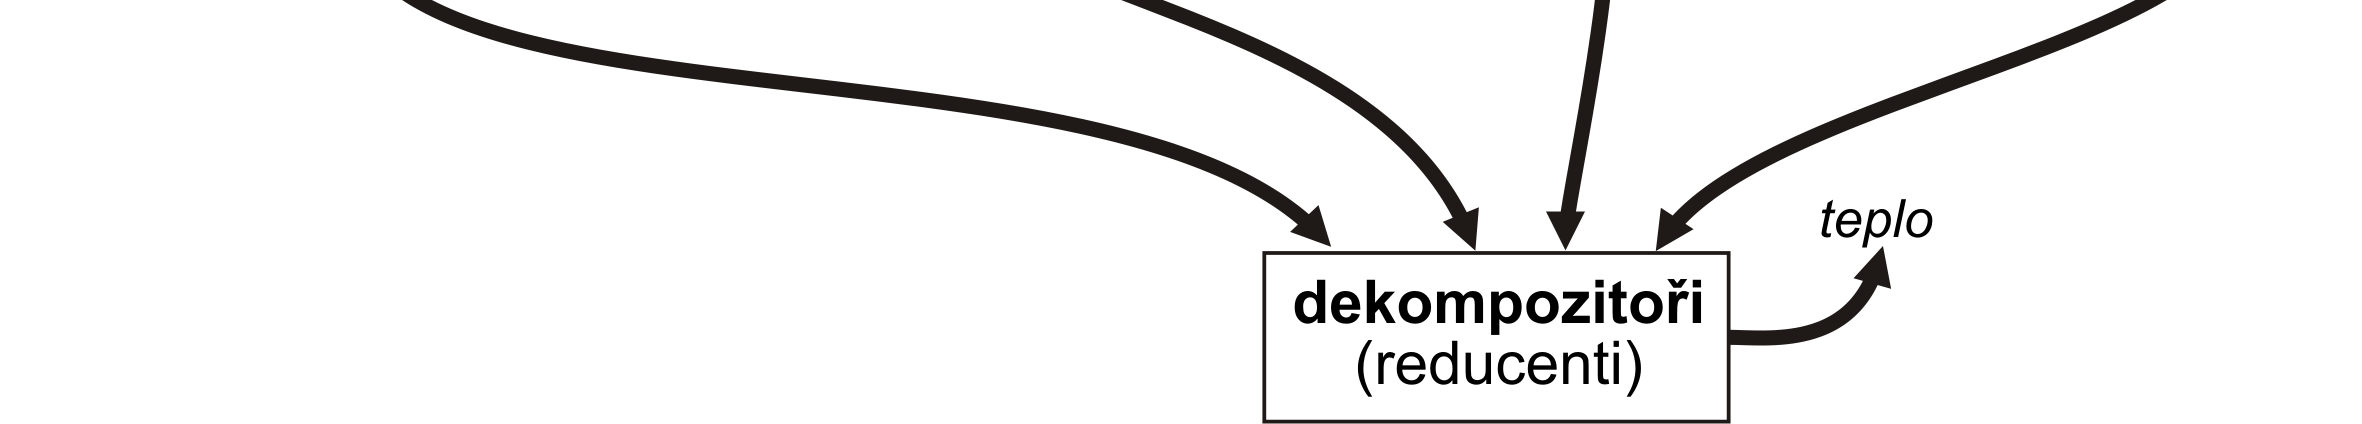 Potravní (neboli trofické) řetězce mohou být velmi komplikované a jeden druh může mít několik postavení (např. všežravci jsou současně primárními i sekundárními konzumenty).